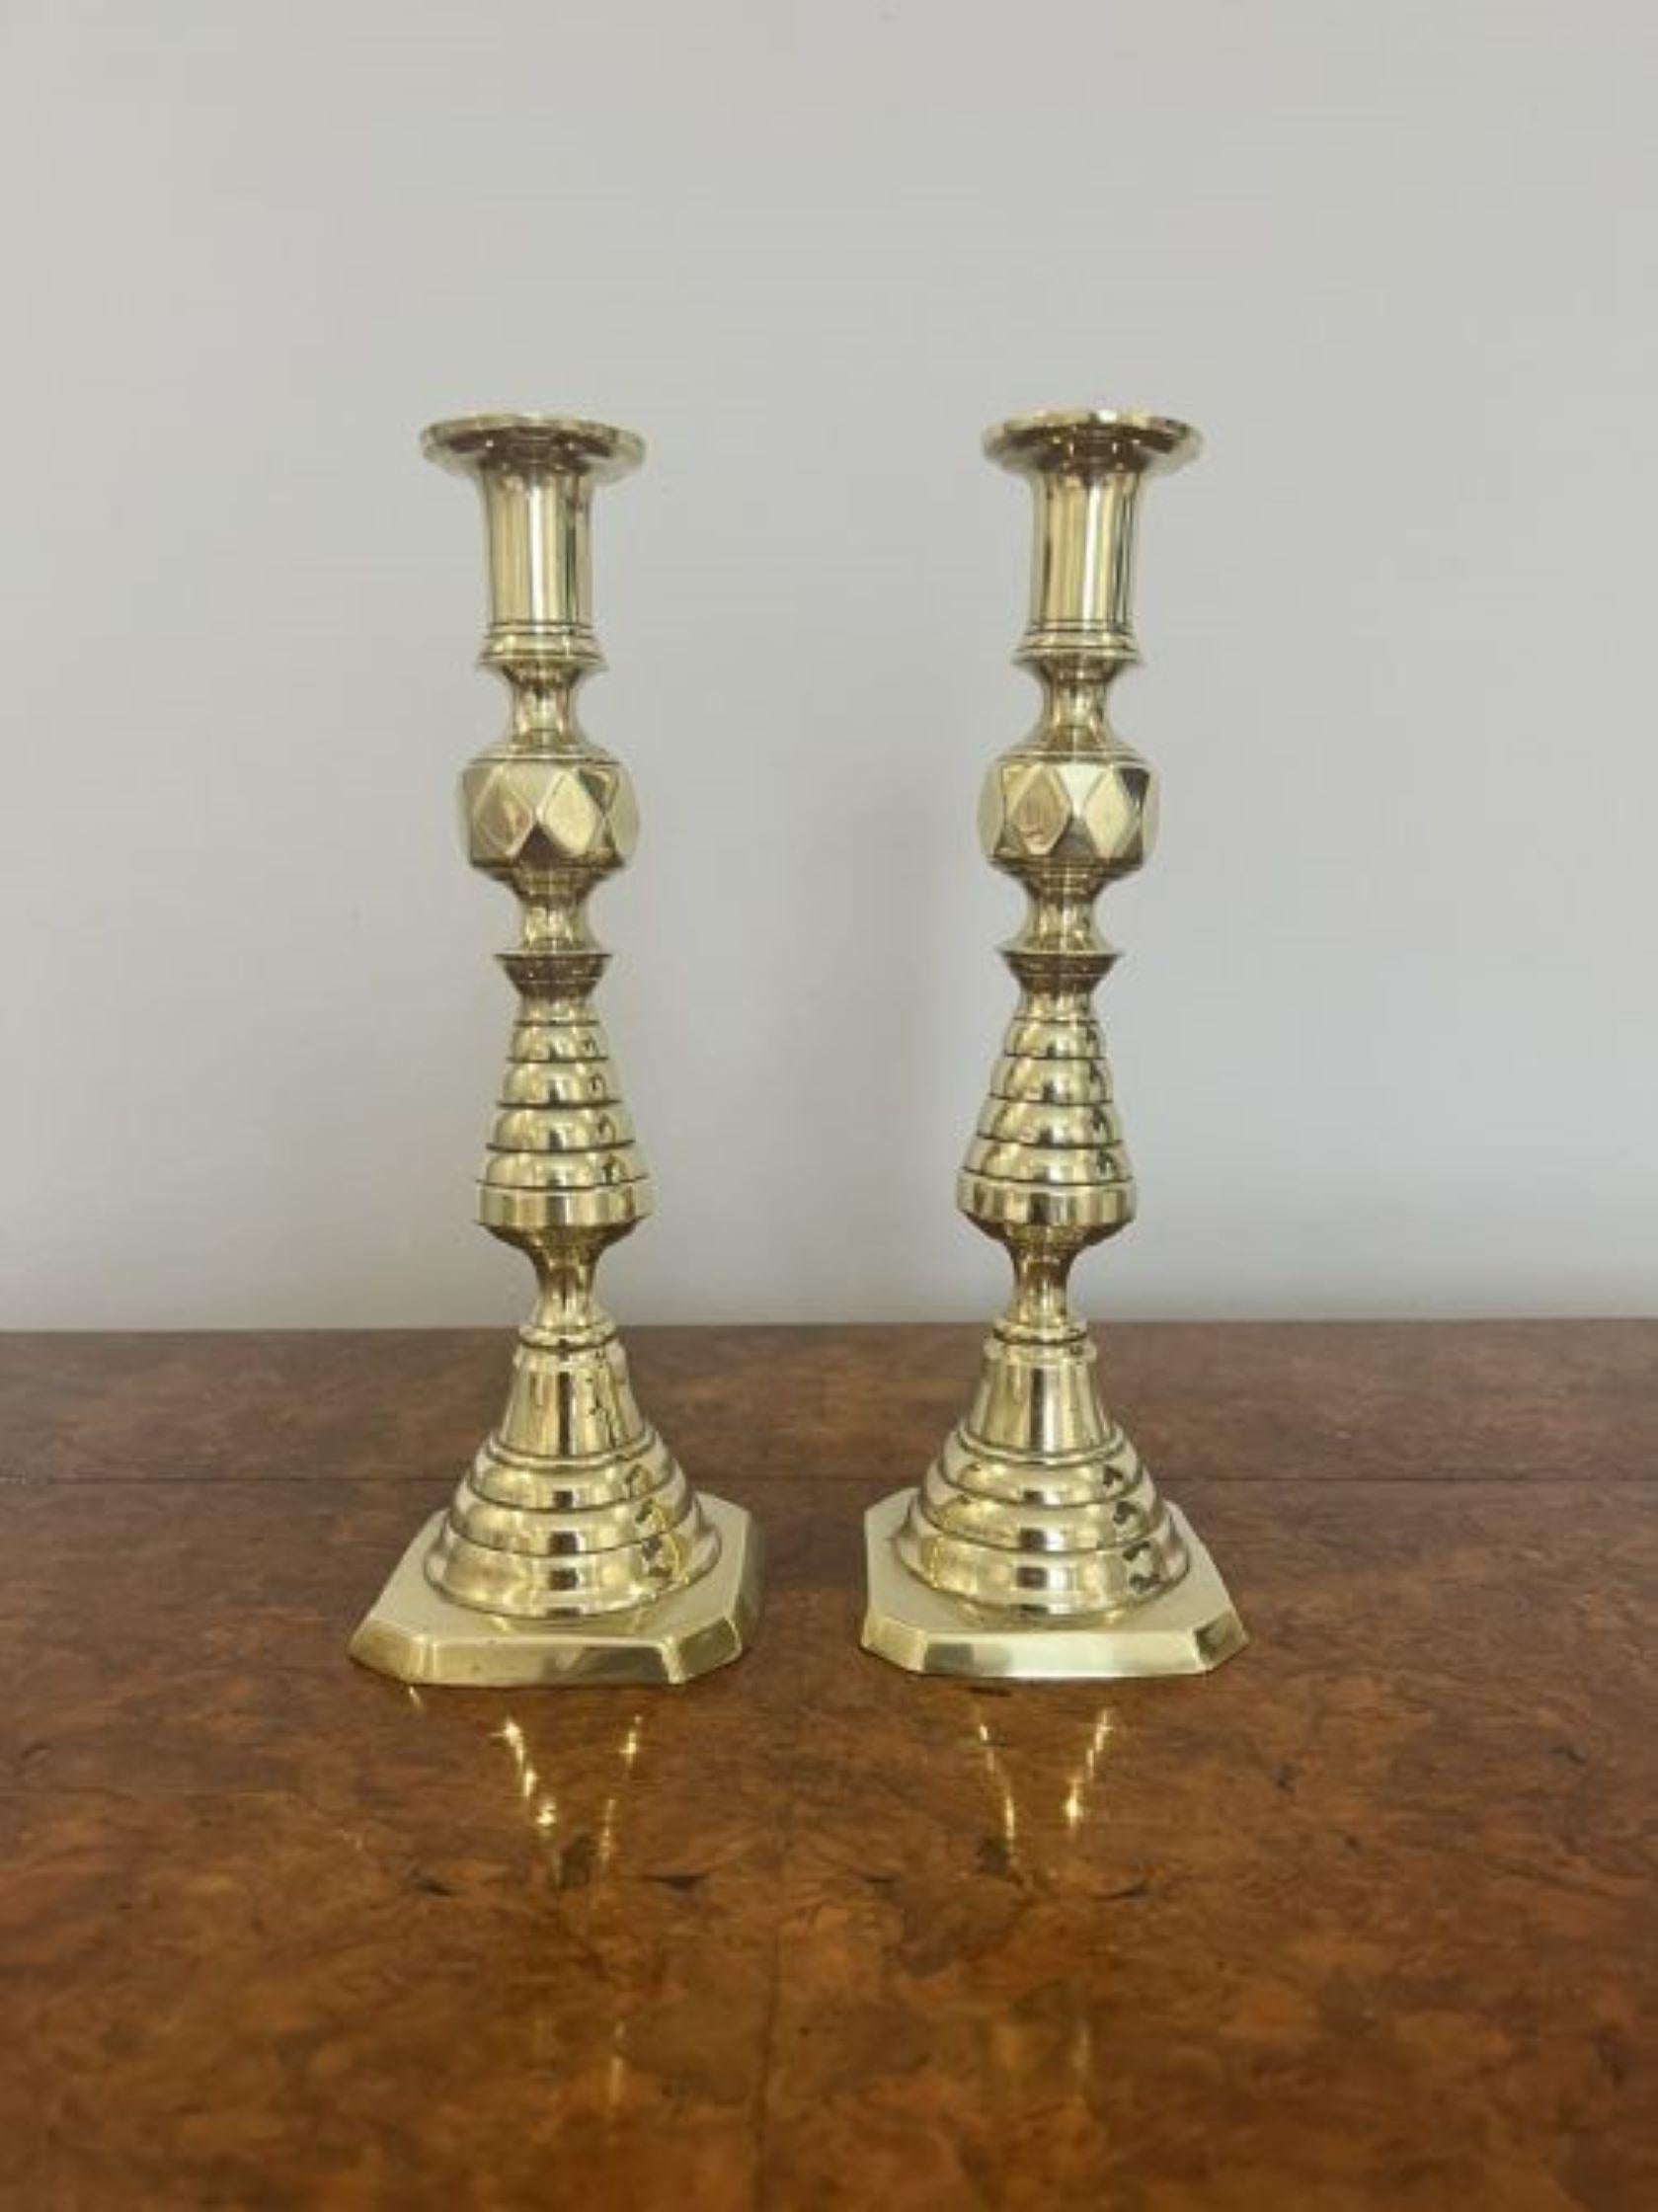 Paire de chandeliers de qualité en laiton de l'époque victorienne. Paire de chandeliers de qualité en laiton de l'époque victorienne avec une colonne en forme de tour reposant sur une base à gradins. 